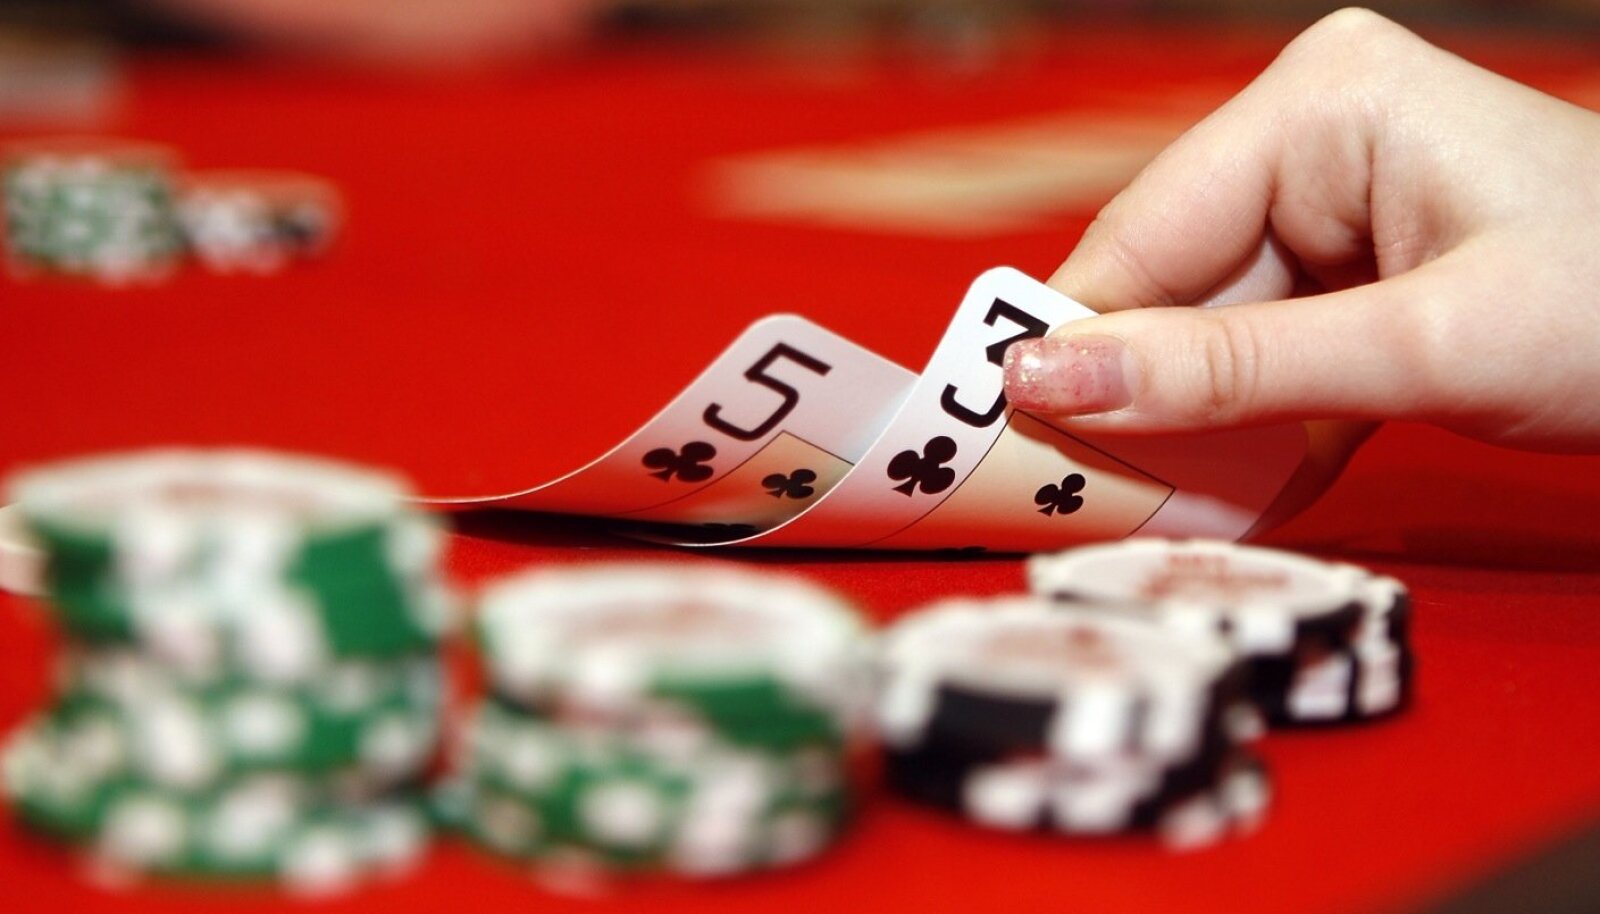 Ловля блефа на ривере - Покерная стратегия с Джонатаном Литтлом